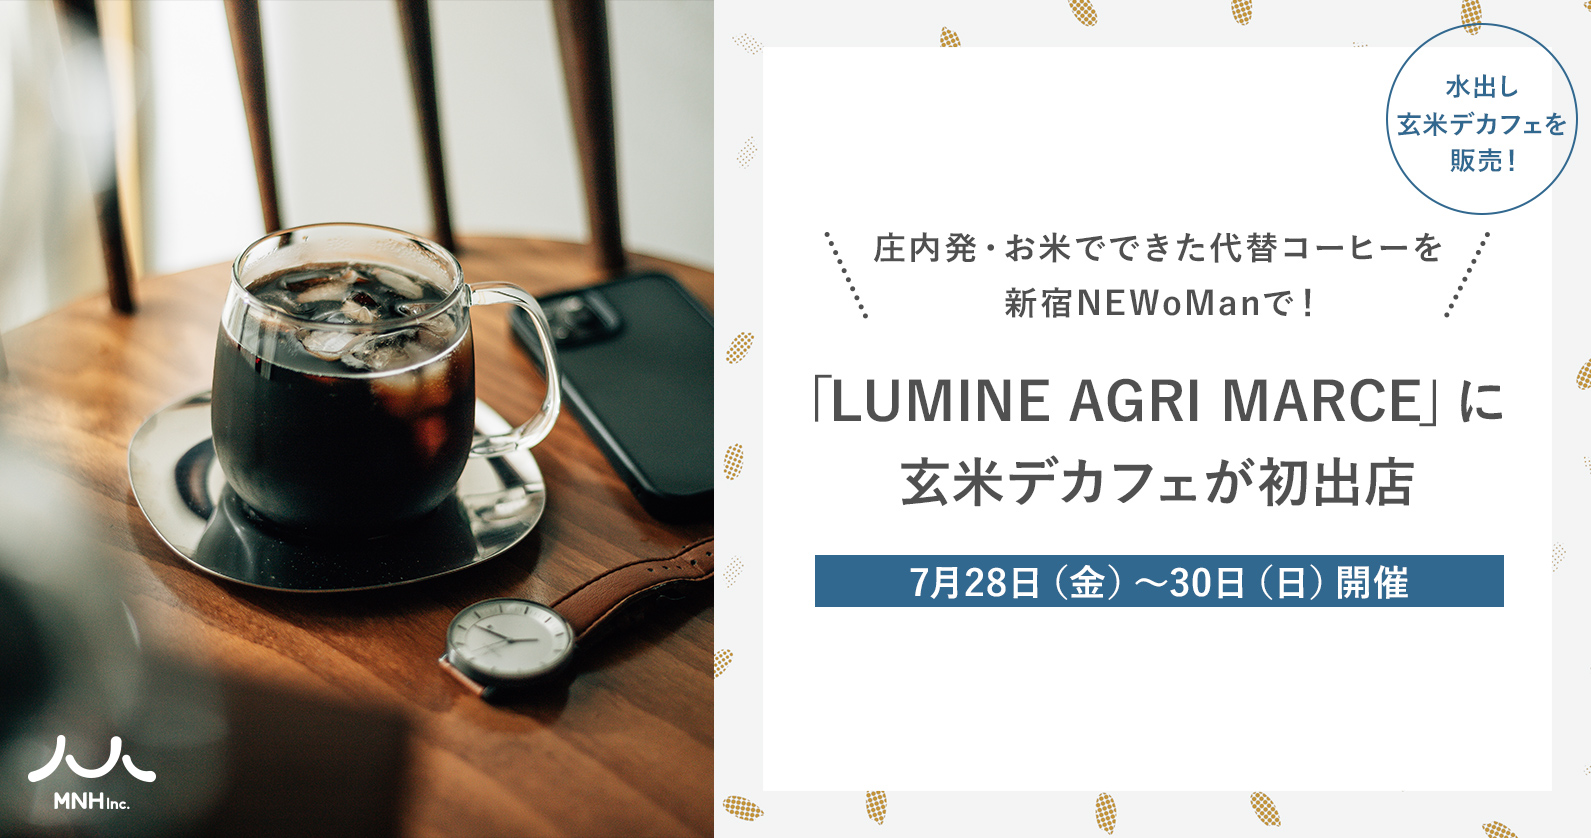 庄内発・お米でできた代替コーヒーを新宿NEWoManで！玄米デカフェが7月28日（金）〜30日（日）開催の「LUMINE AGRI MARCE」に初出店